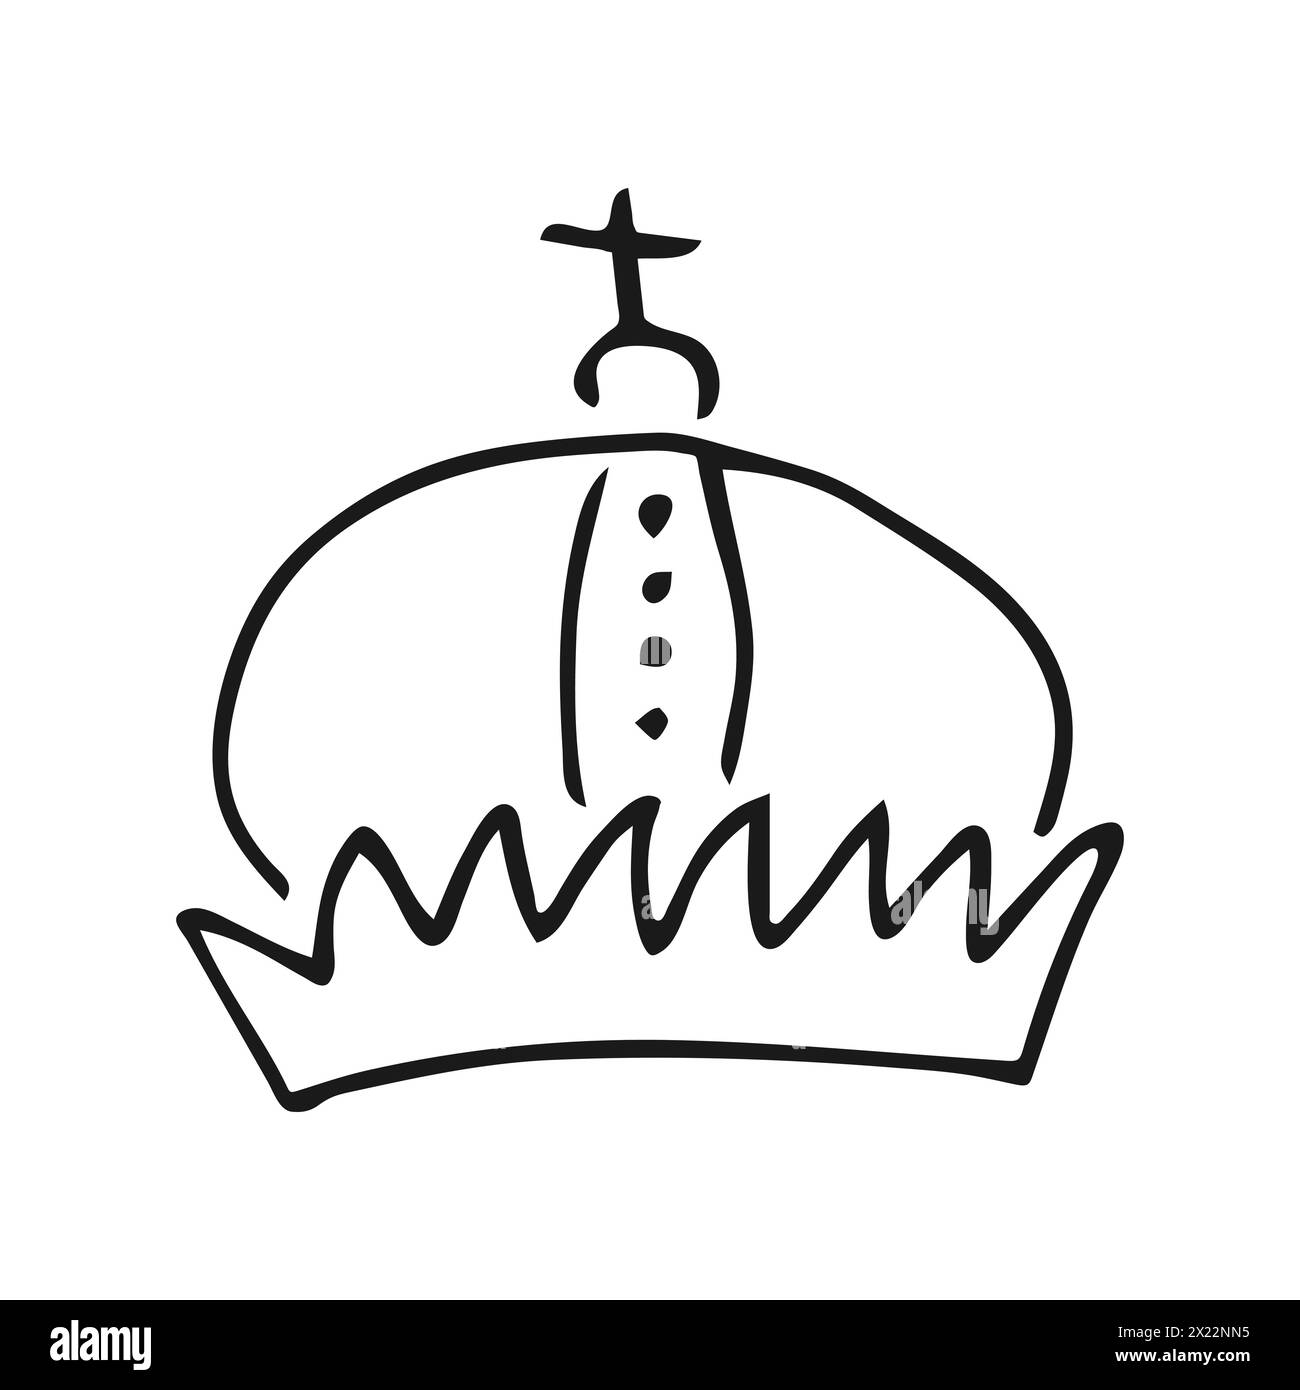 Couronne dessinée à la main. Simple croquis de graffiti reine ou couronne de roi. Couronnement impérial royal et symbole monarque. Pinceau noir doodle isolé sur fond blanc Illustration de Vecteur